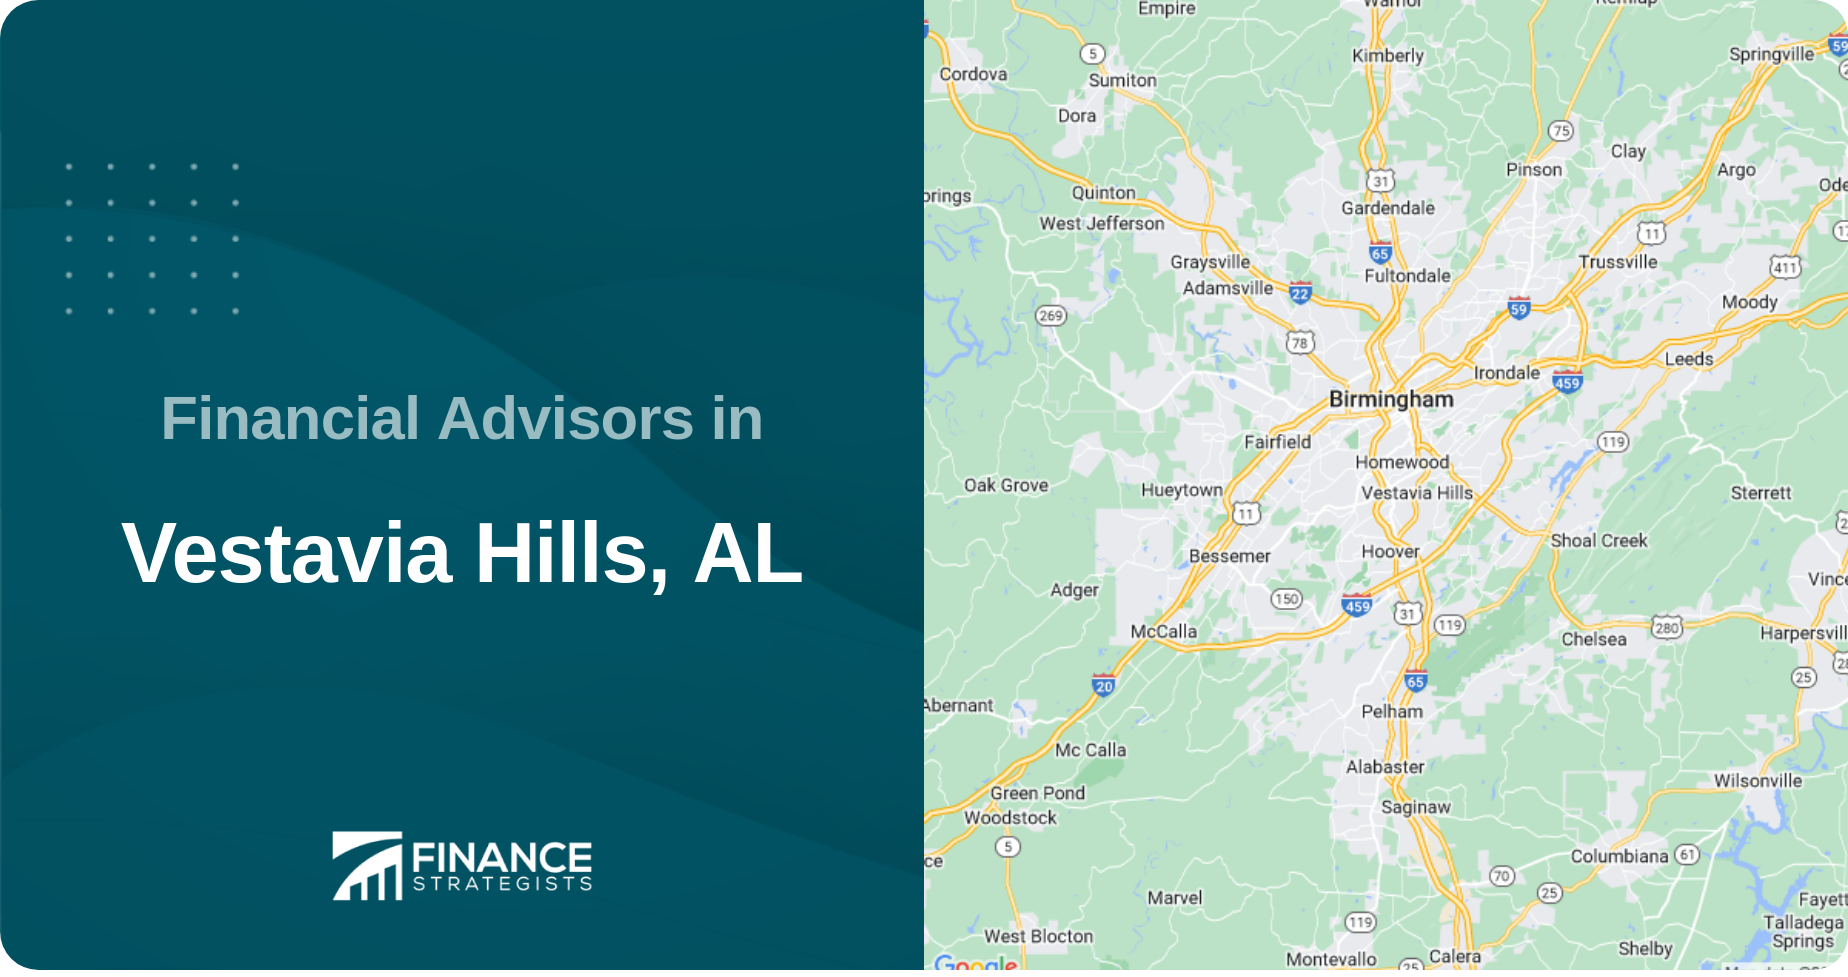 Financial Advisors in Vestavia Hills, AL